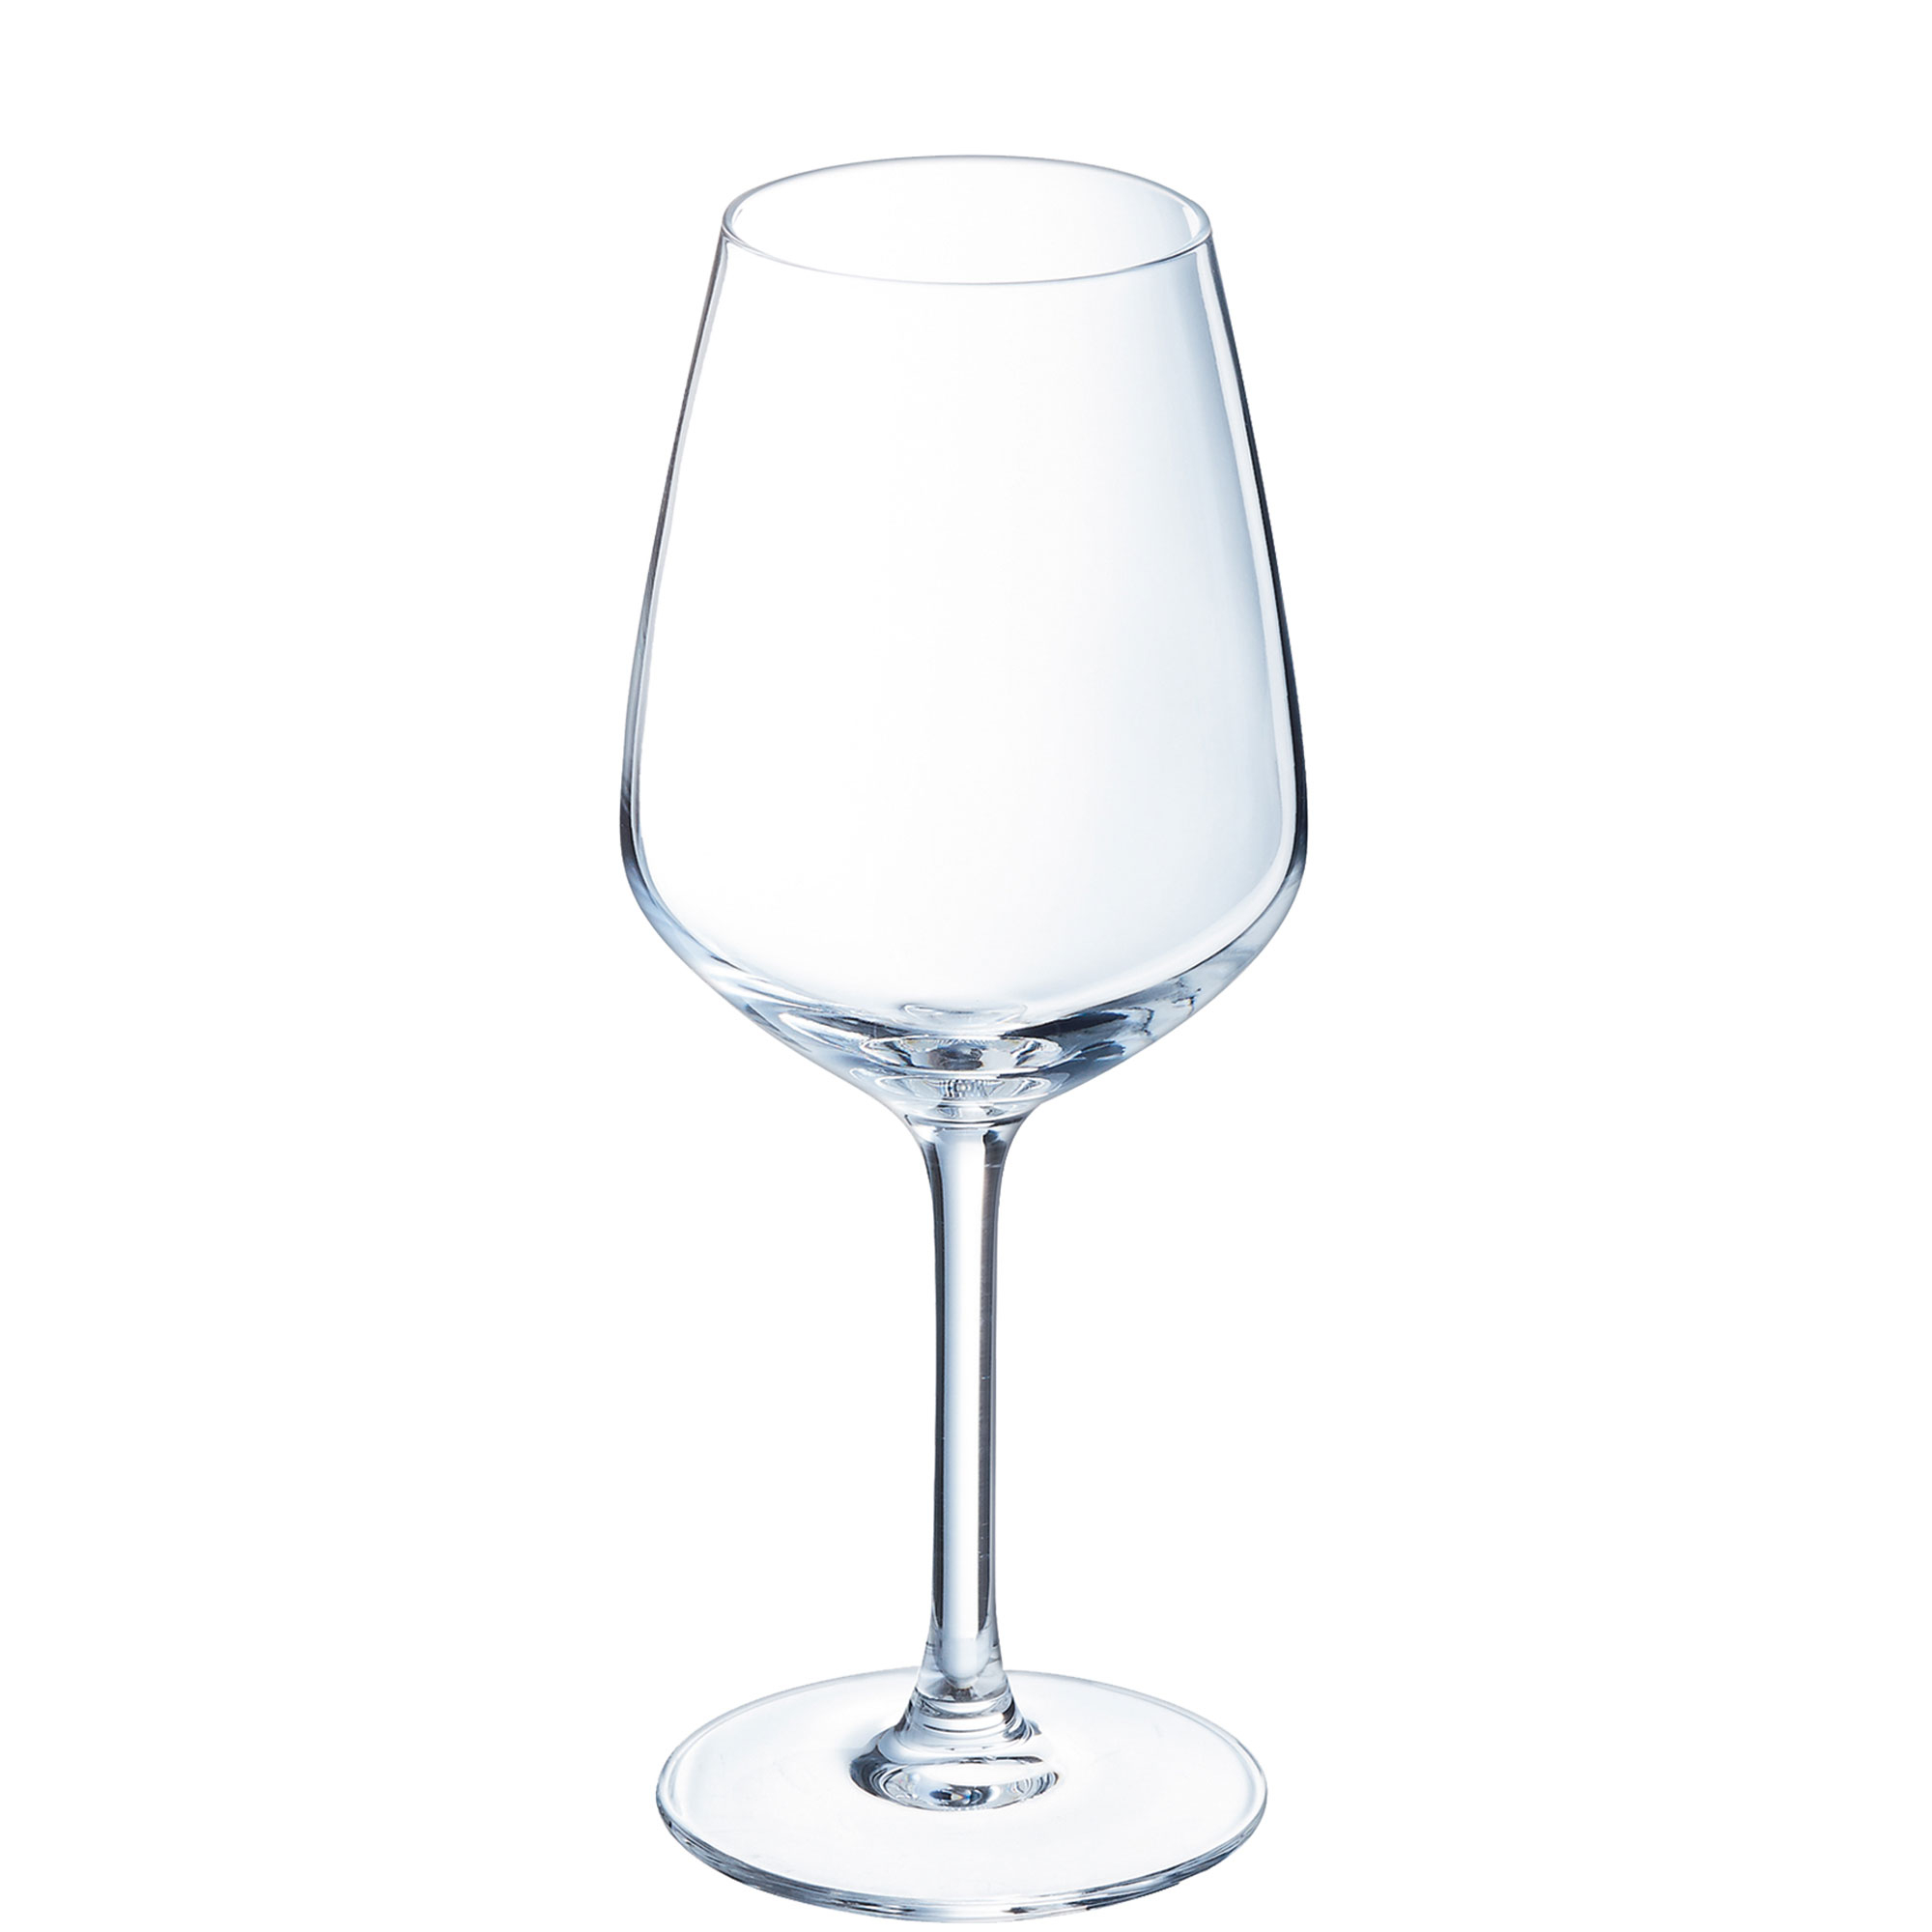 Weinglas Vina Juliette, Arcoroc - 300ml, 0,1+0,2l Eiche (1 Stk.)